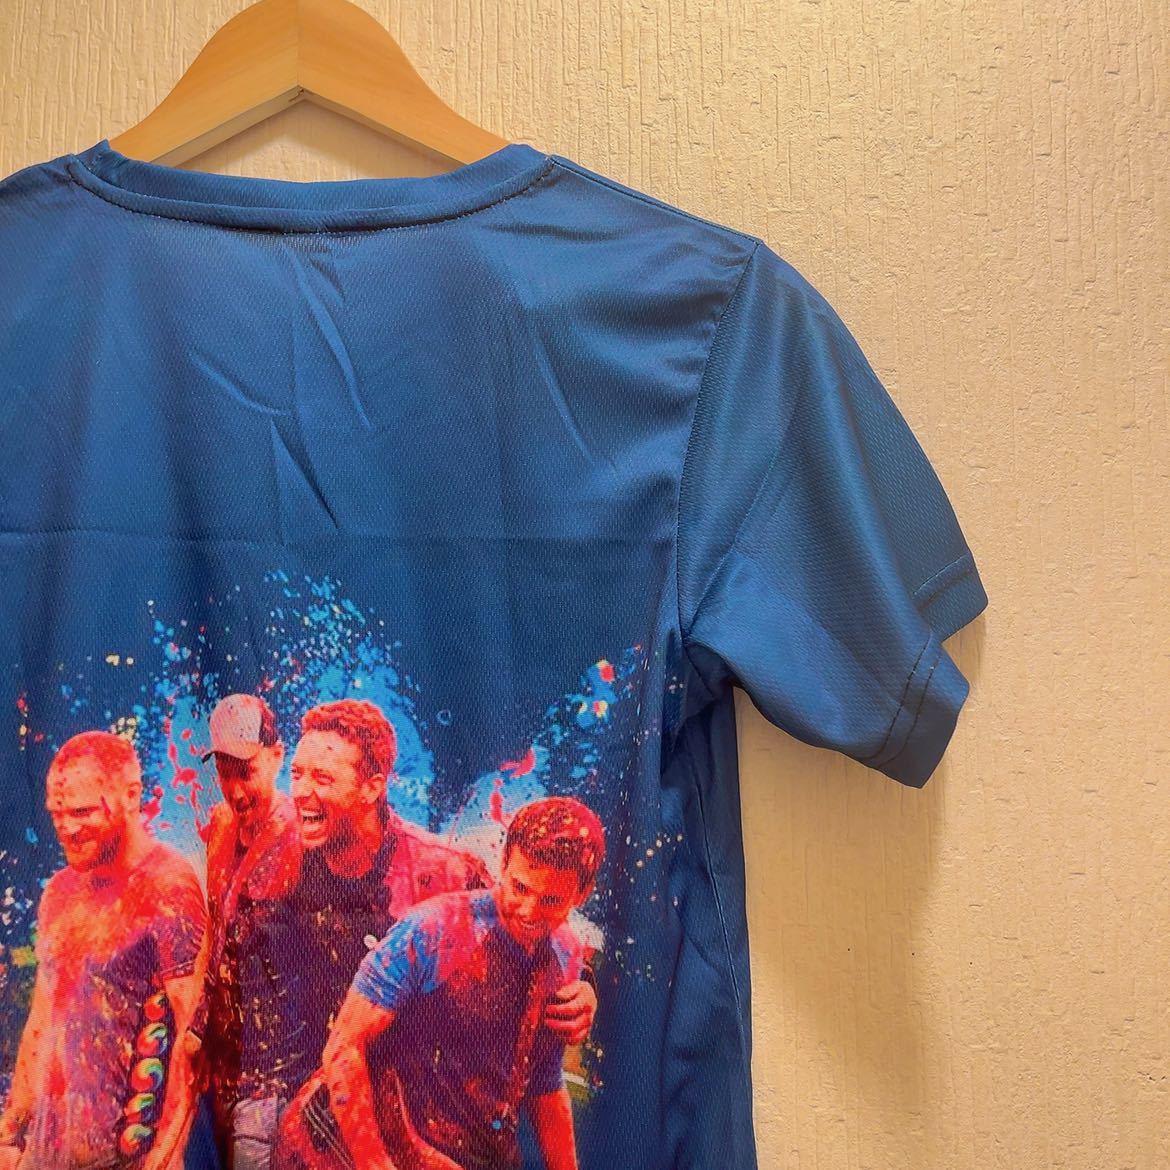 新品★ブルー★ Coldplay / コールドプレイ★Tシャツ★ユニセックス